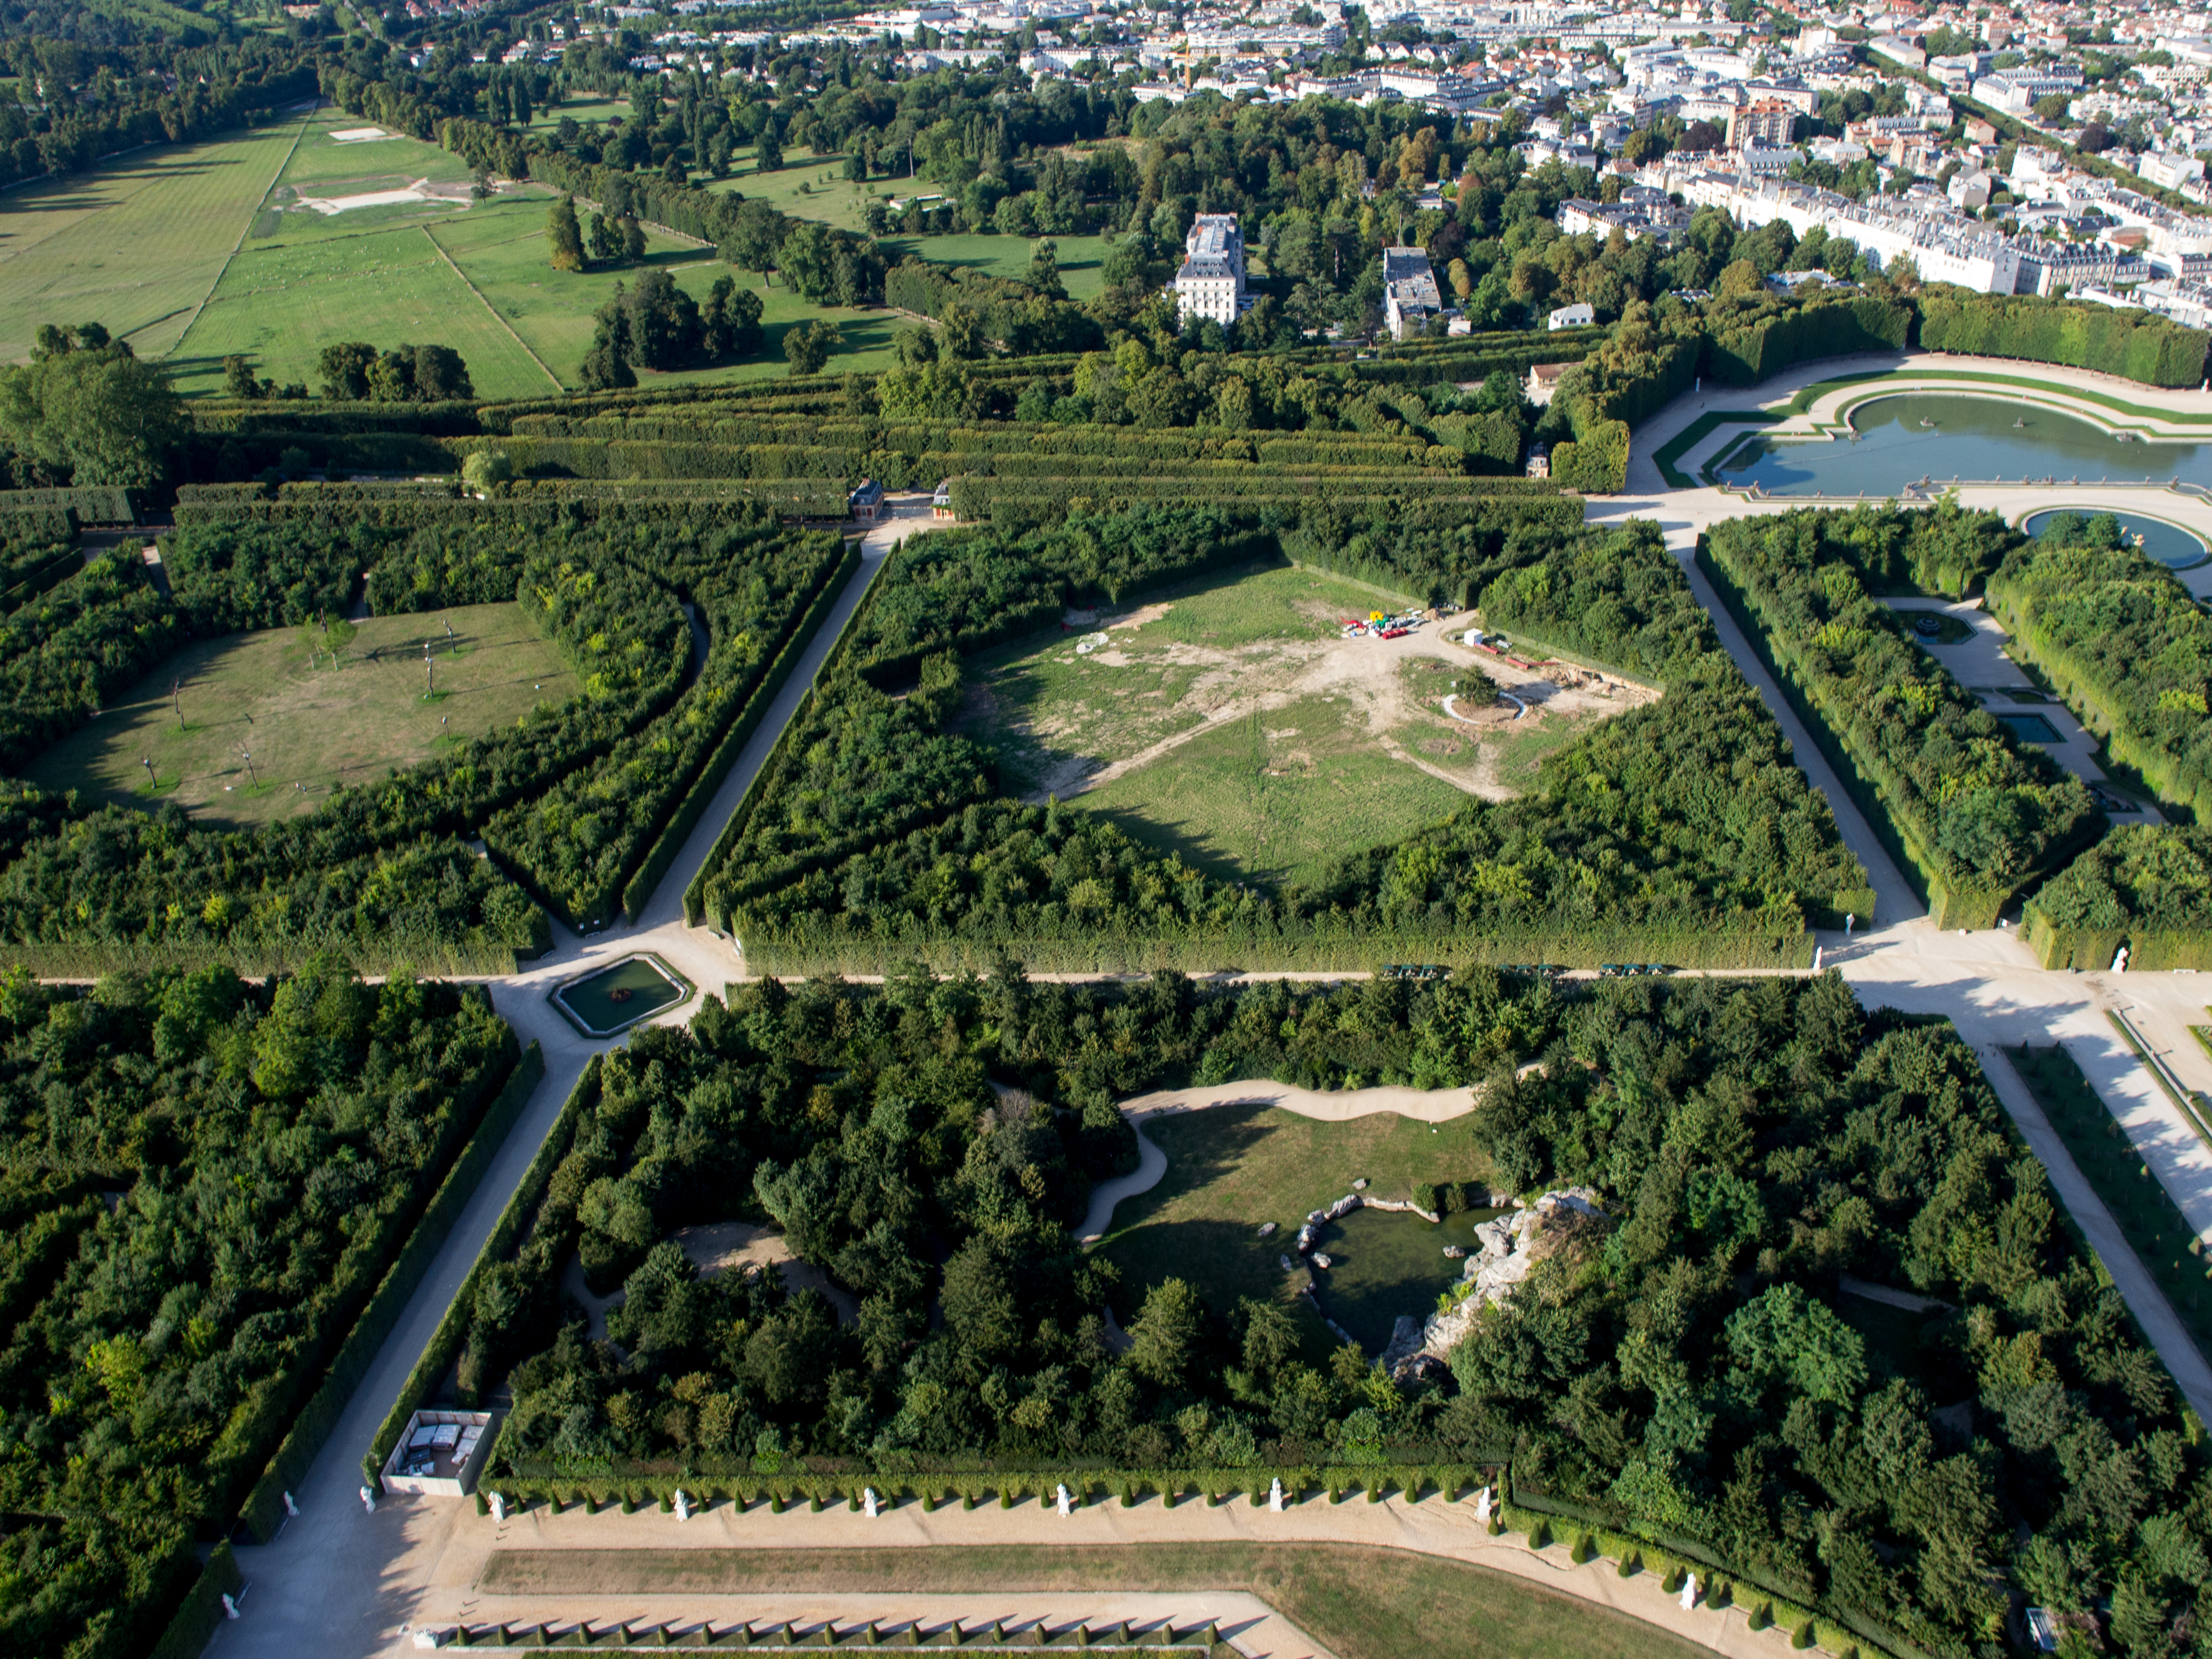 Vue aérienne du domaine de Versailles par ToucanWings - Creative Commons By Sa 3.0 - 075